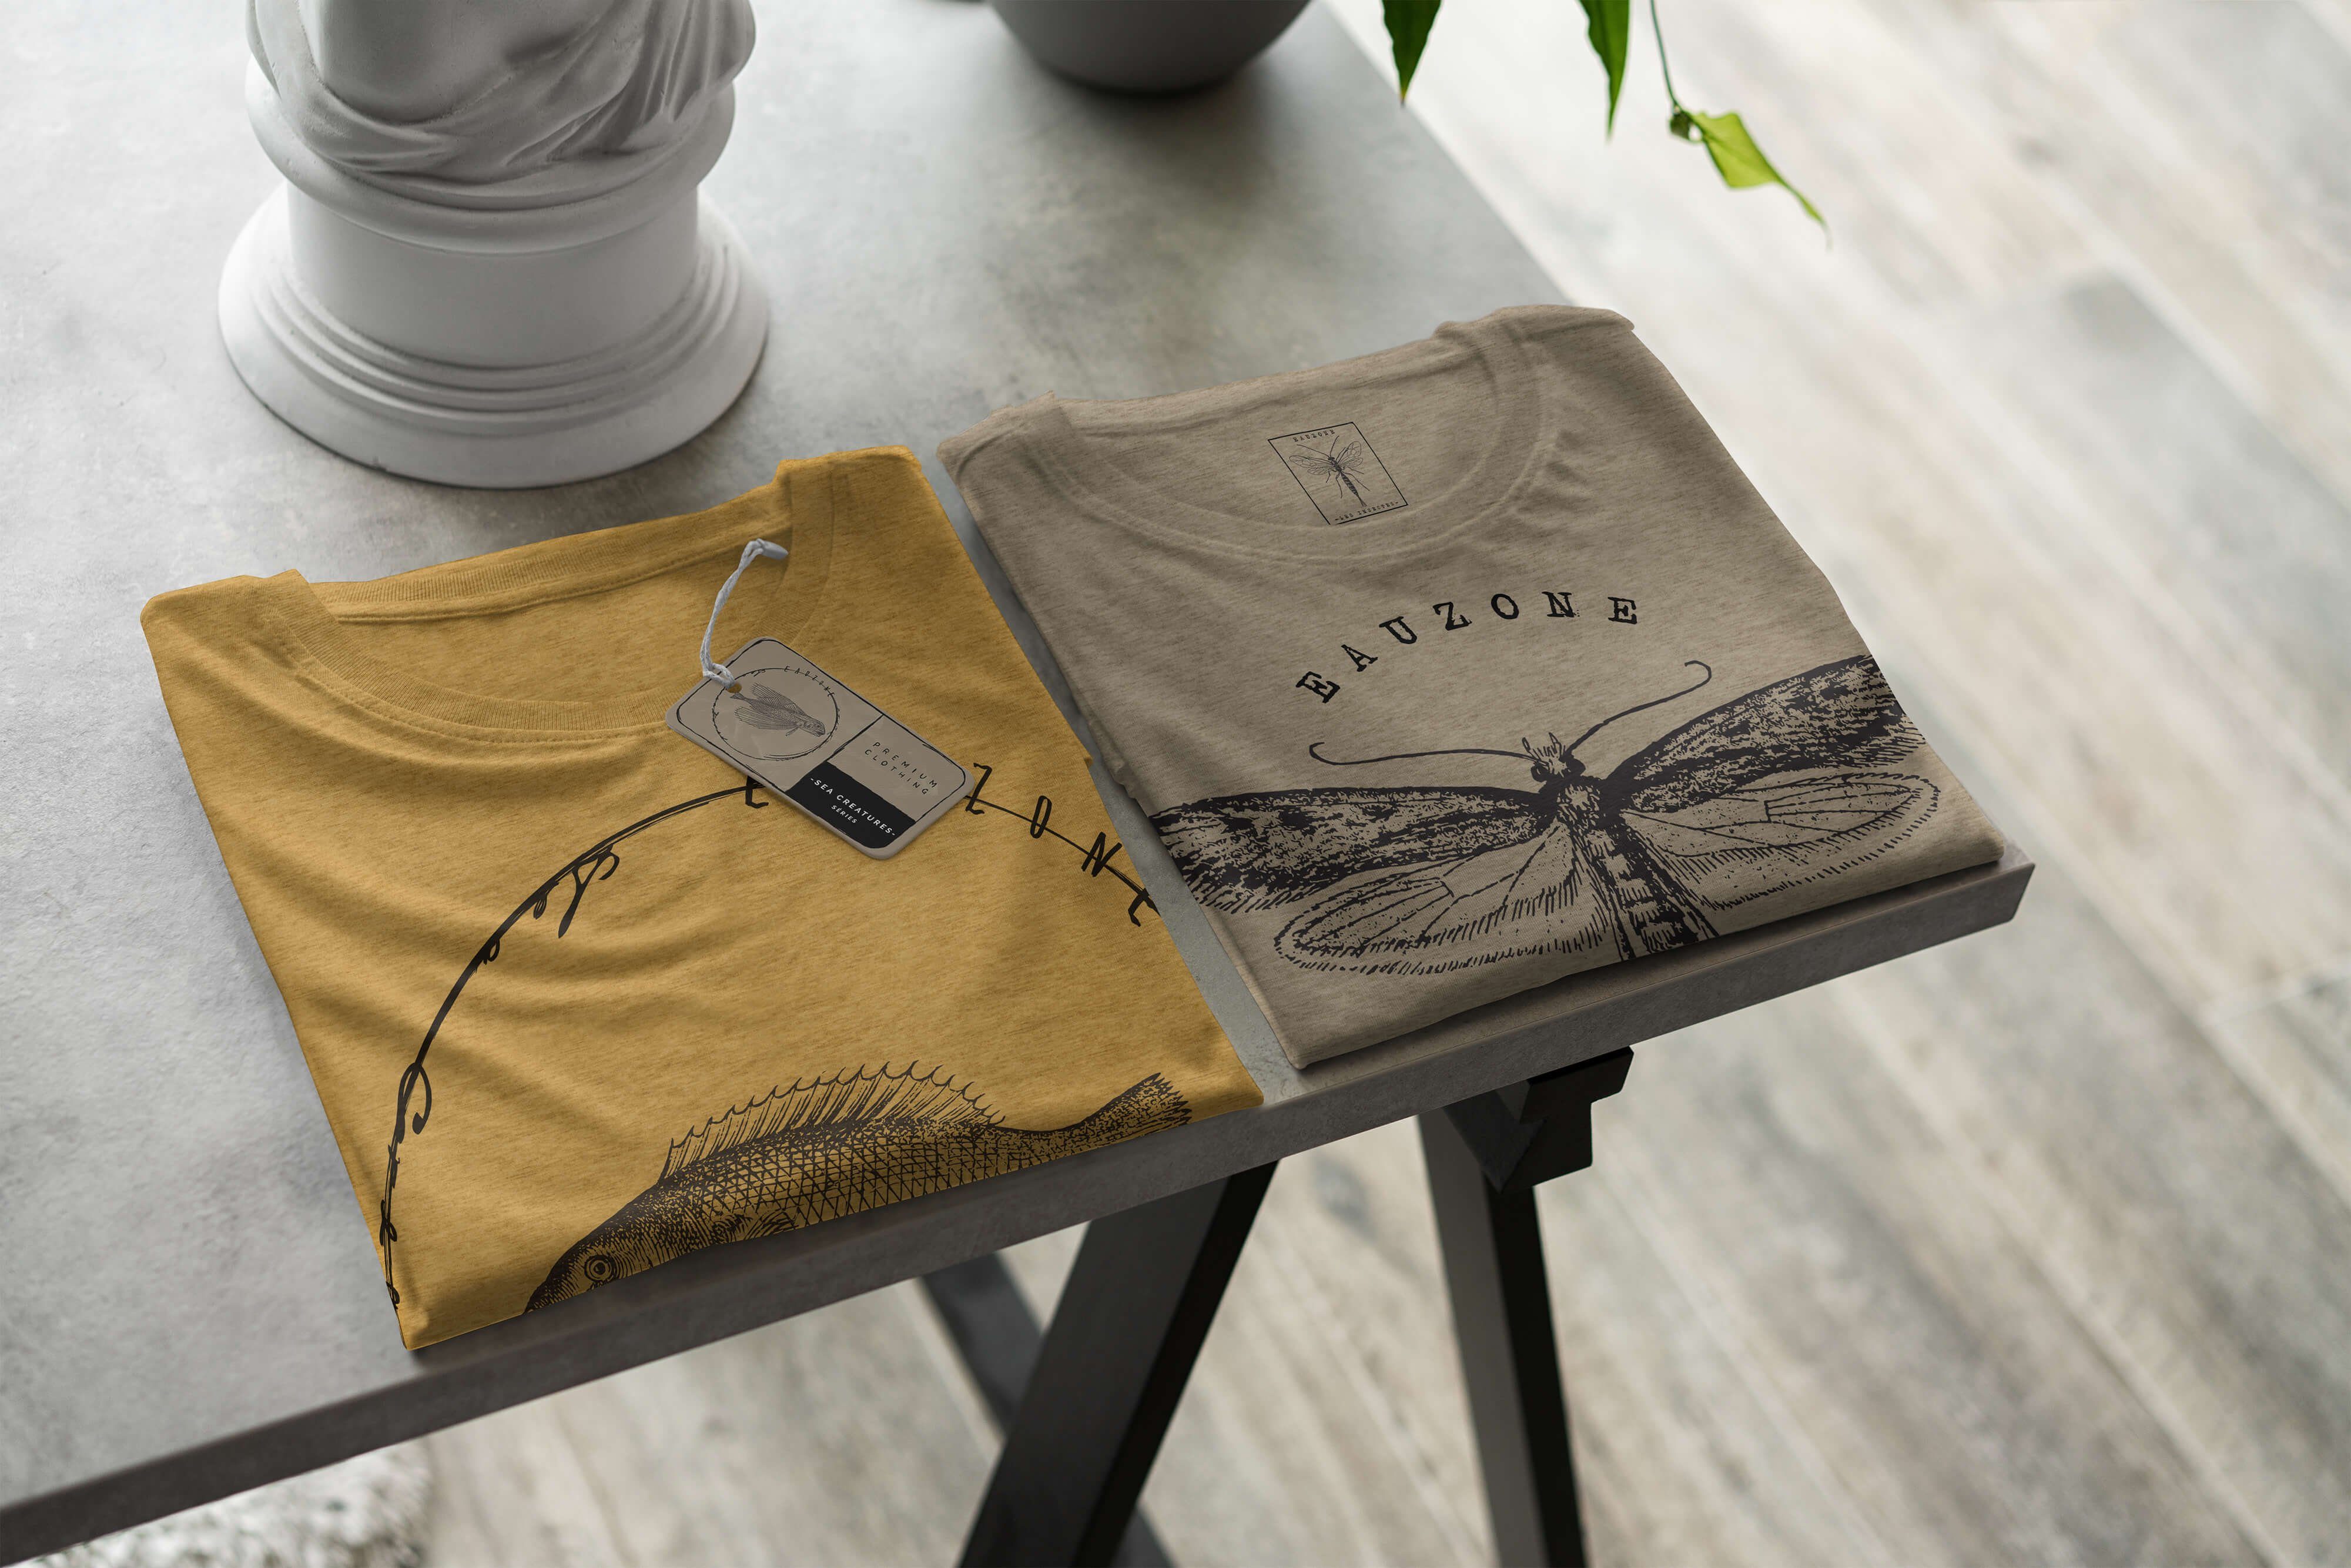 Sea - Serie: sportlicher T-Shirt / Creatures, Fische Art T-Shirt Antique Sea 041 und Struktur Sinus Gold feine Schnitt Tiefsee